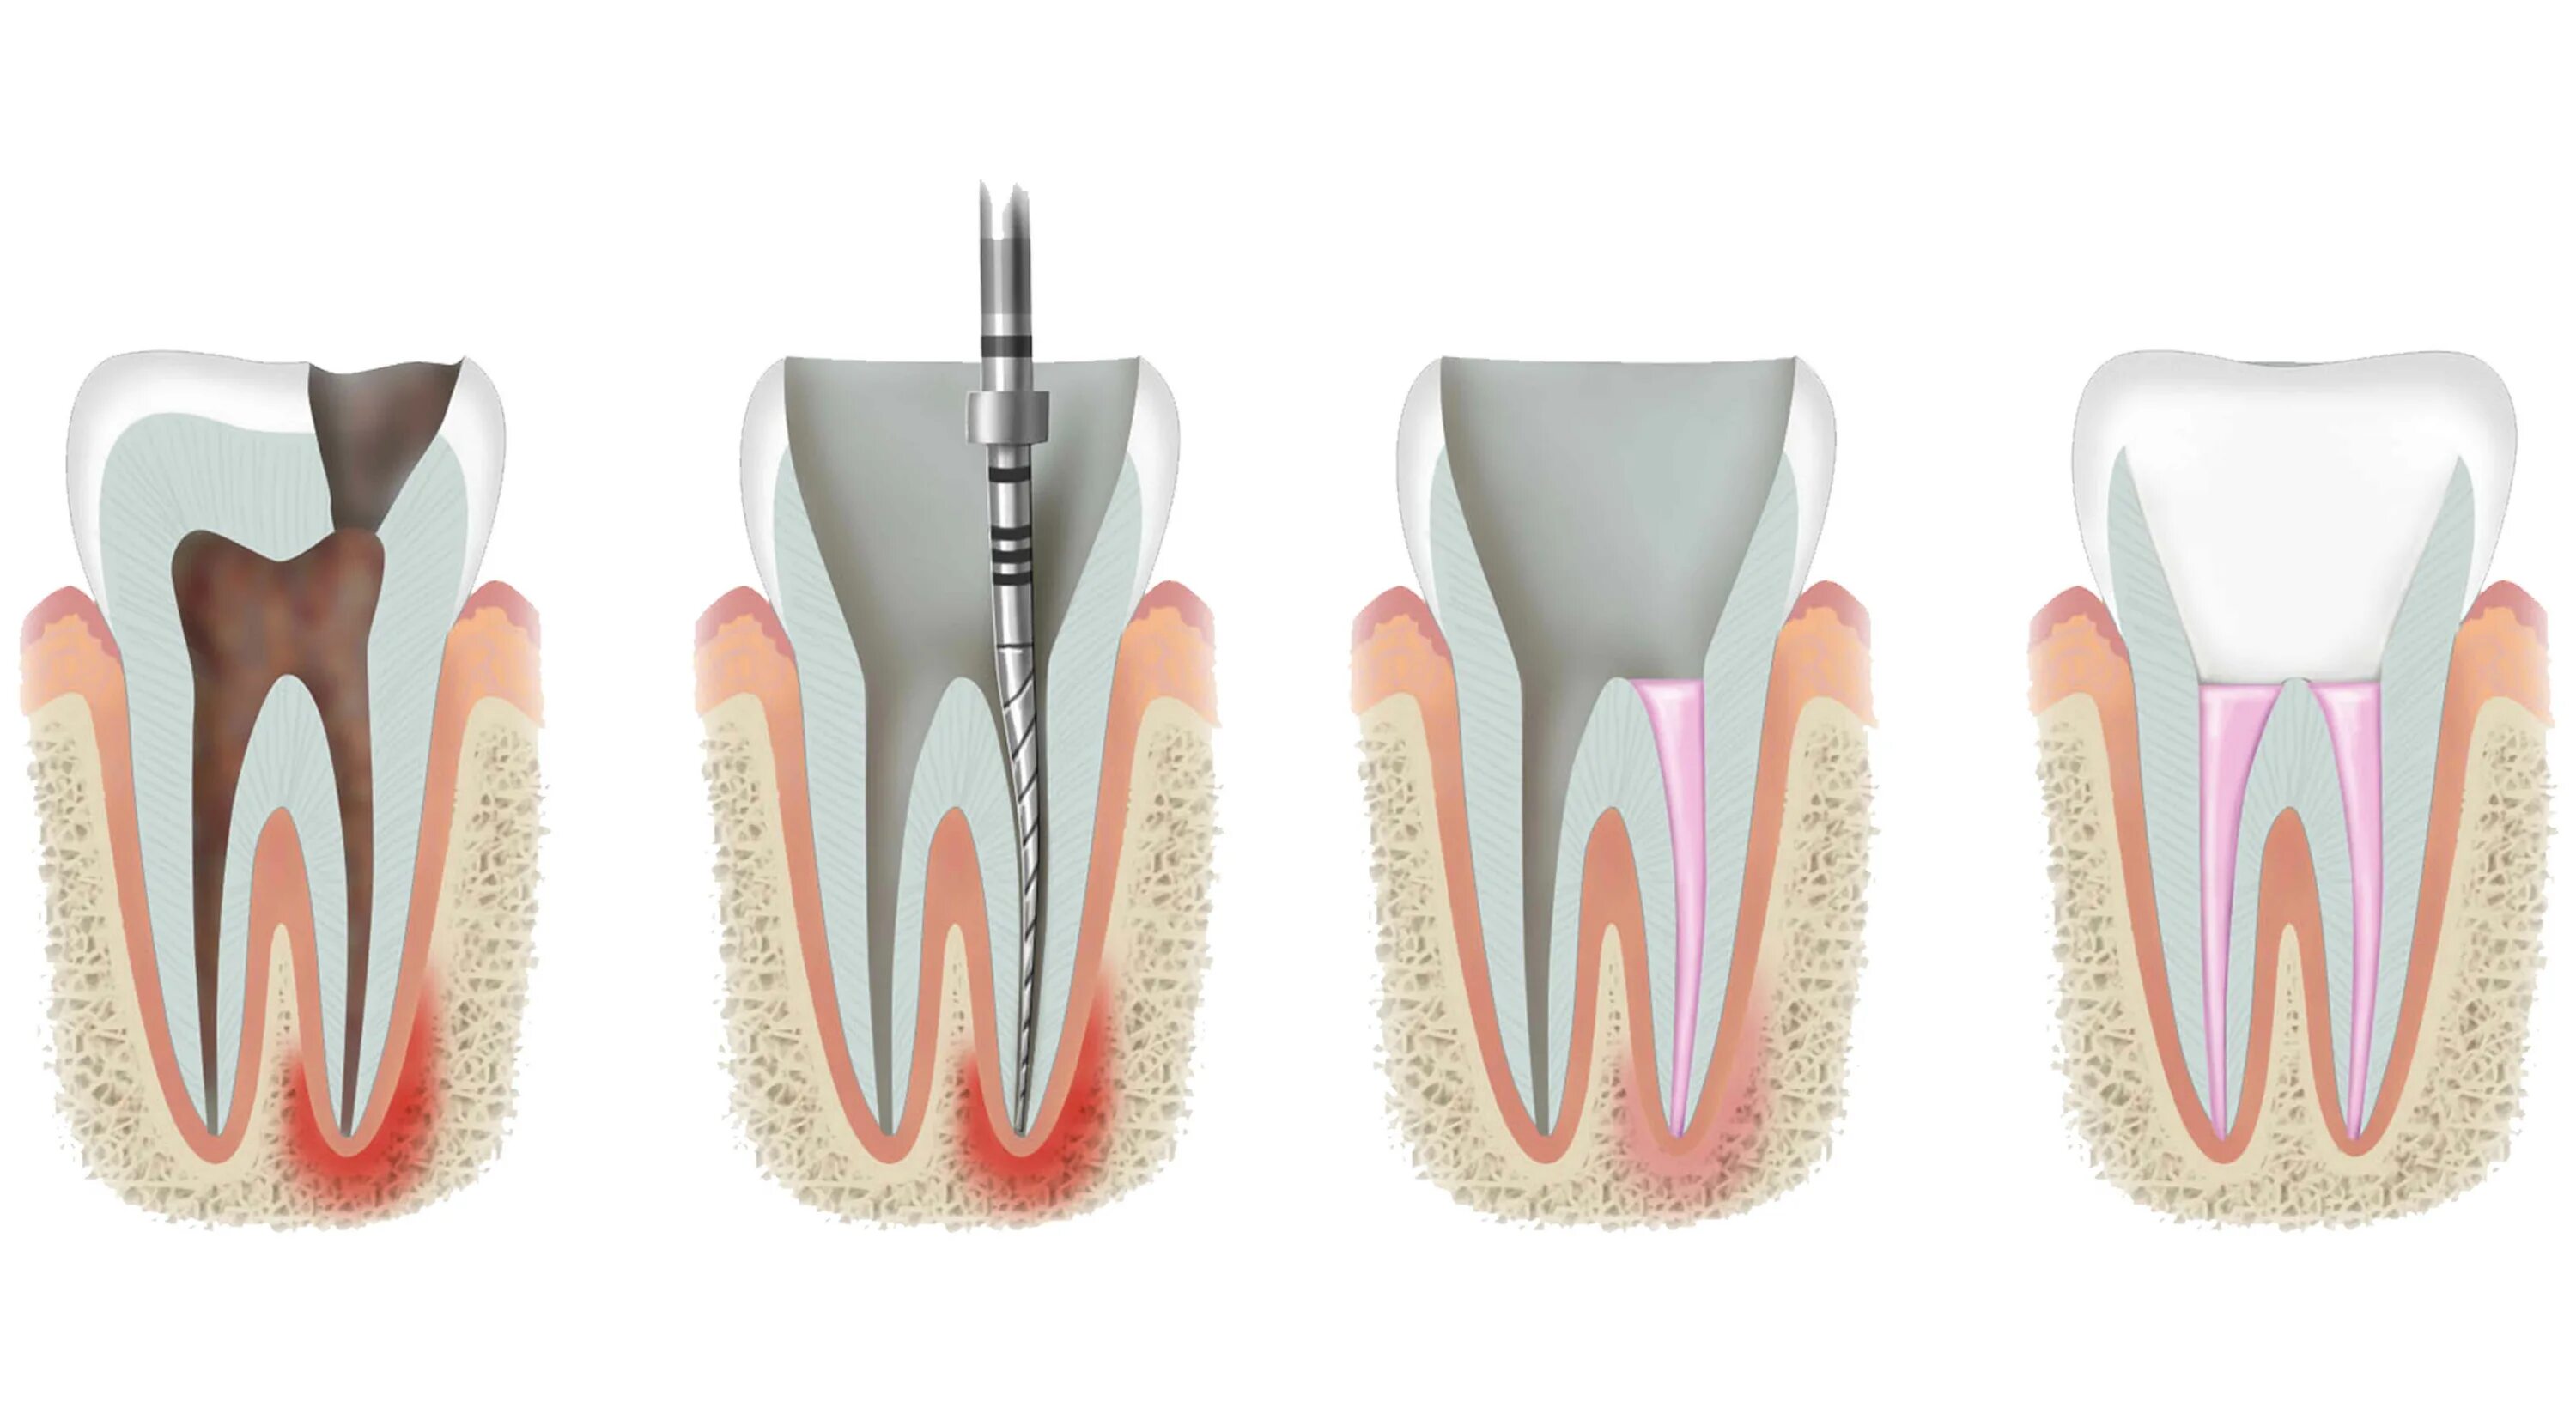 Периодонтит эндодонтия. Пломбирование зуба после лечения каналов